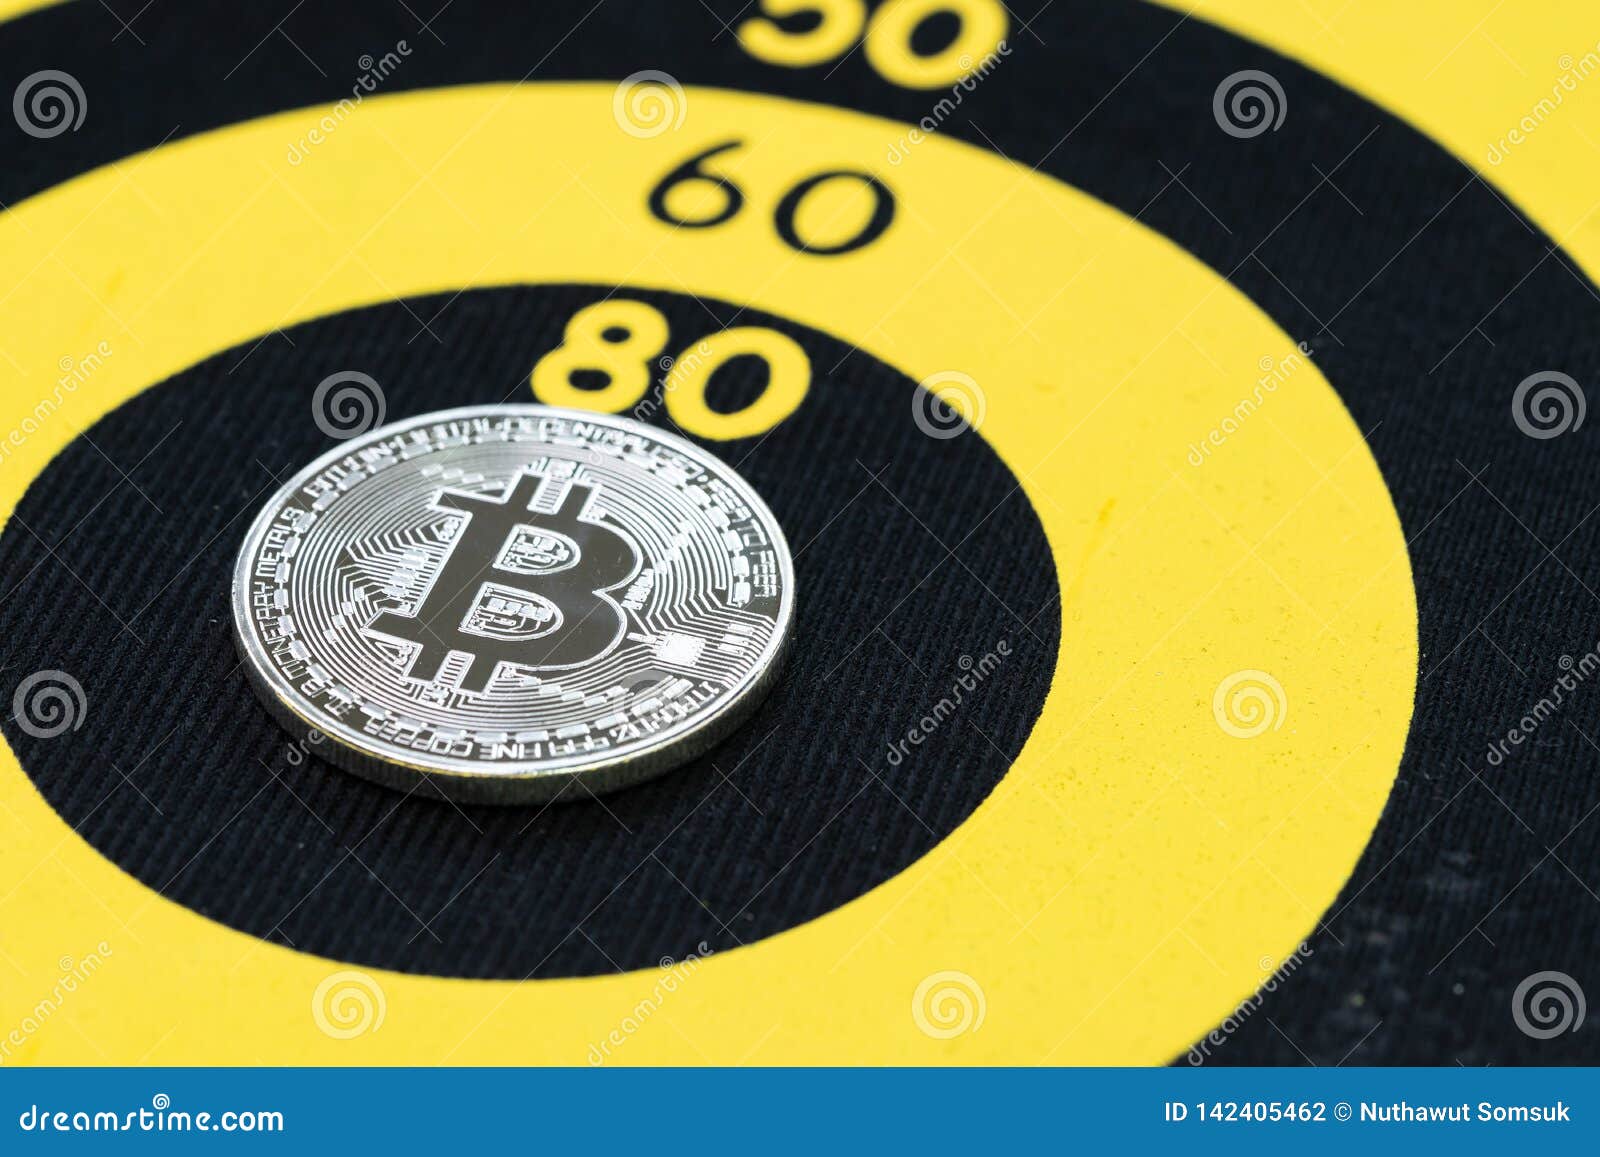 bitcoin price target